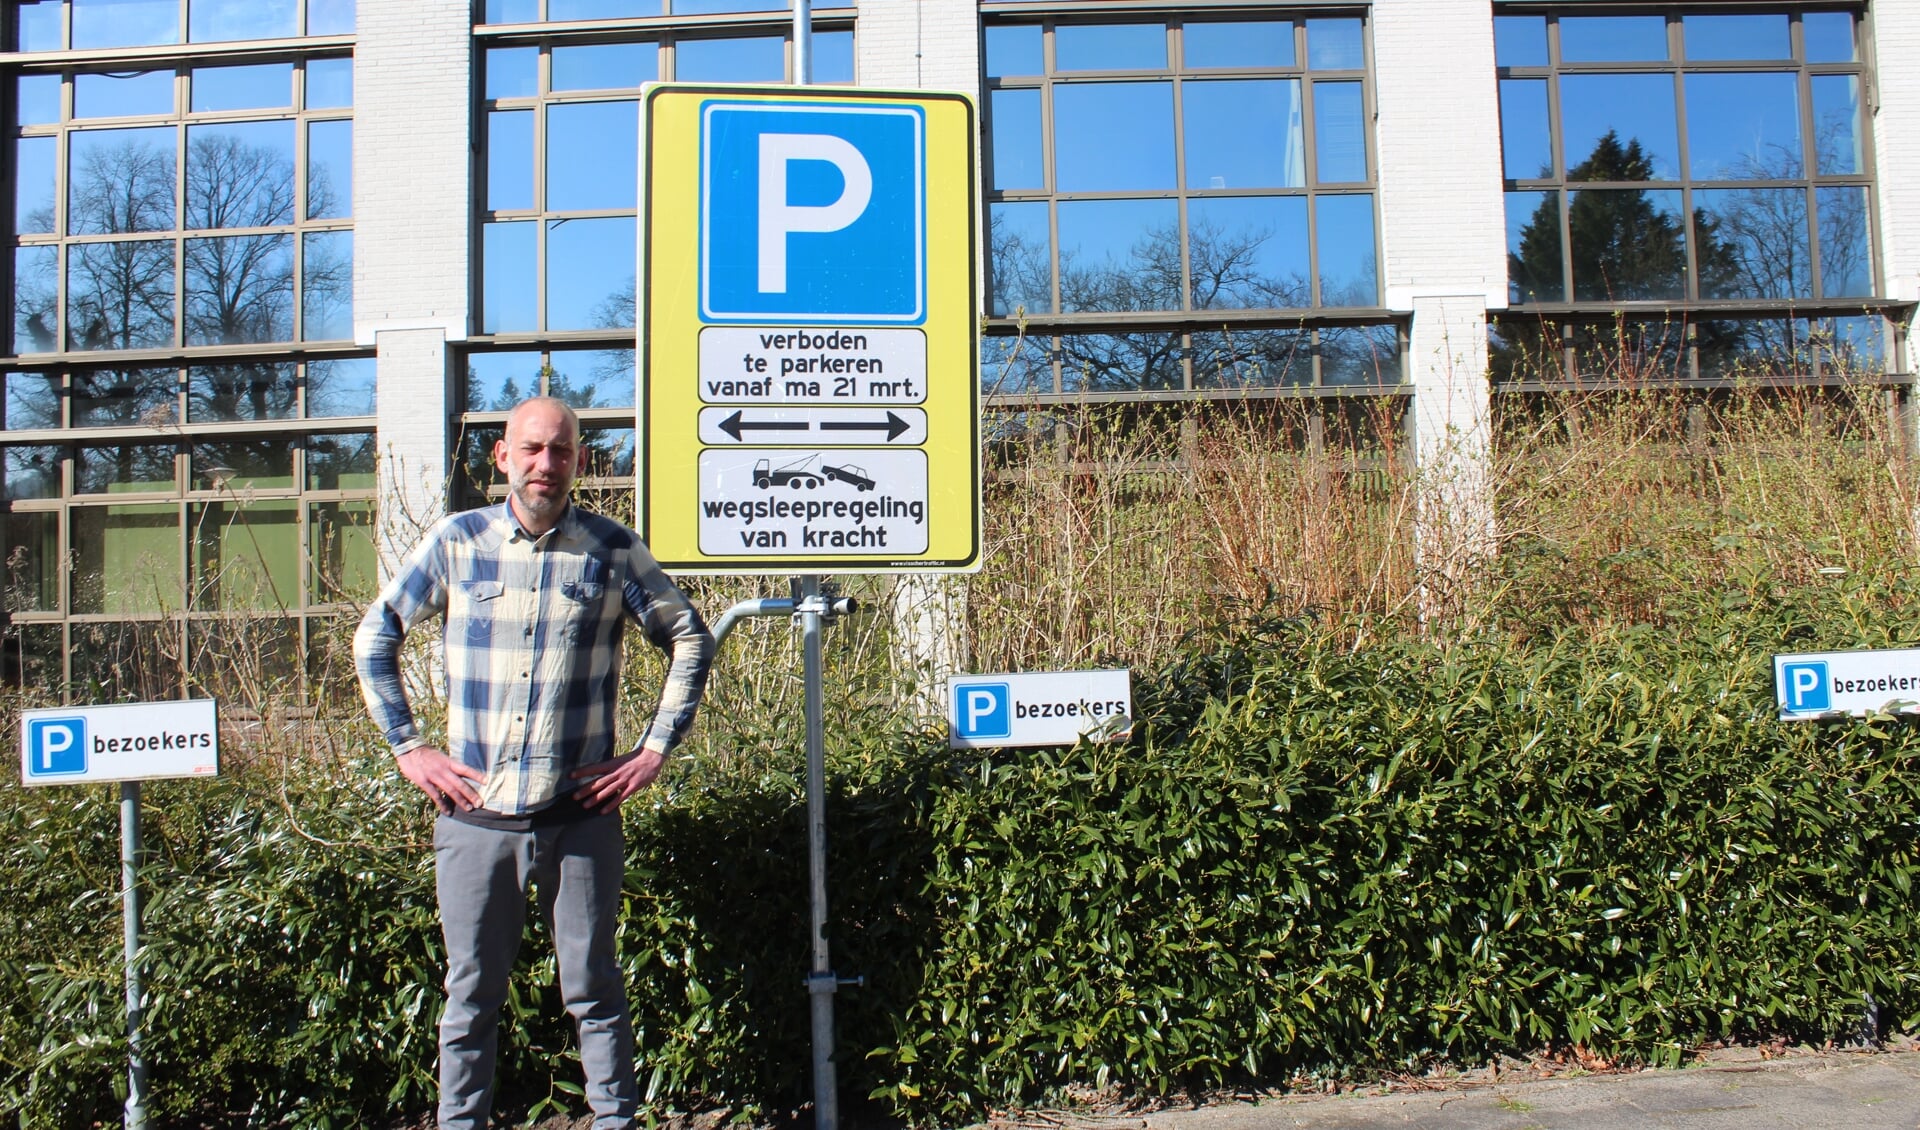 Gemeenteraadslid Erik den Hertog: ‘Voor de deur van het gemeentehuis worden de bestaande parkeervakken vervangen door half-bestrate vakken van olifantsgras’.